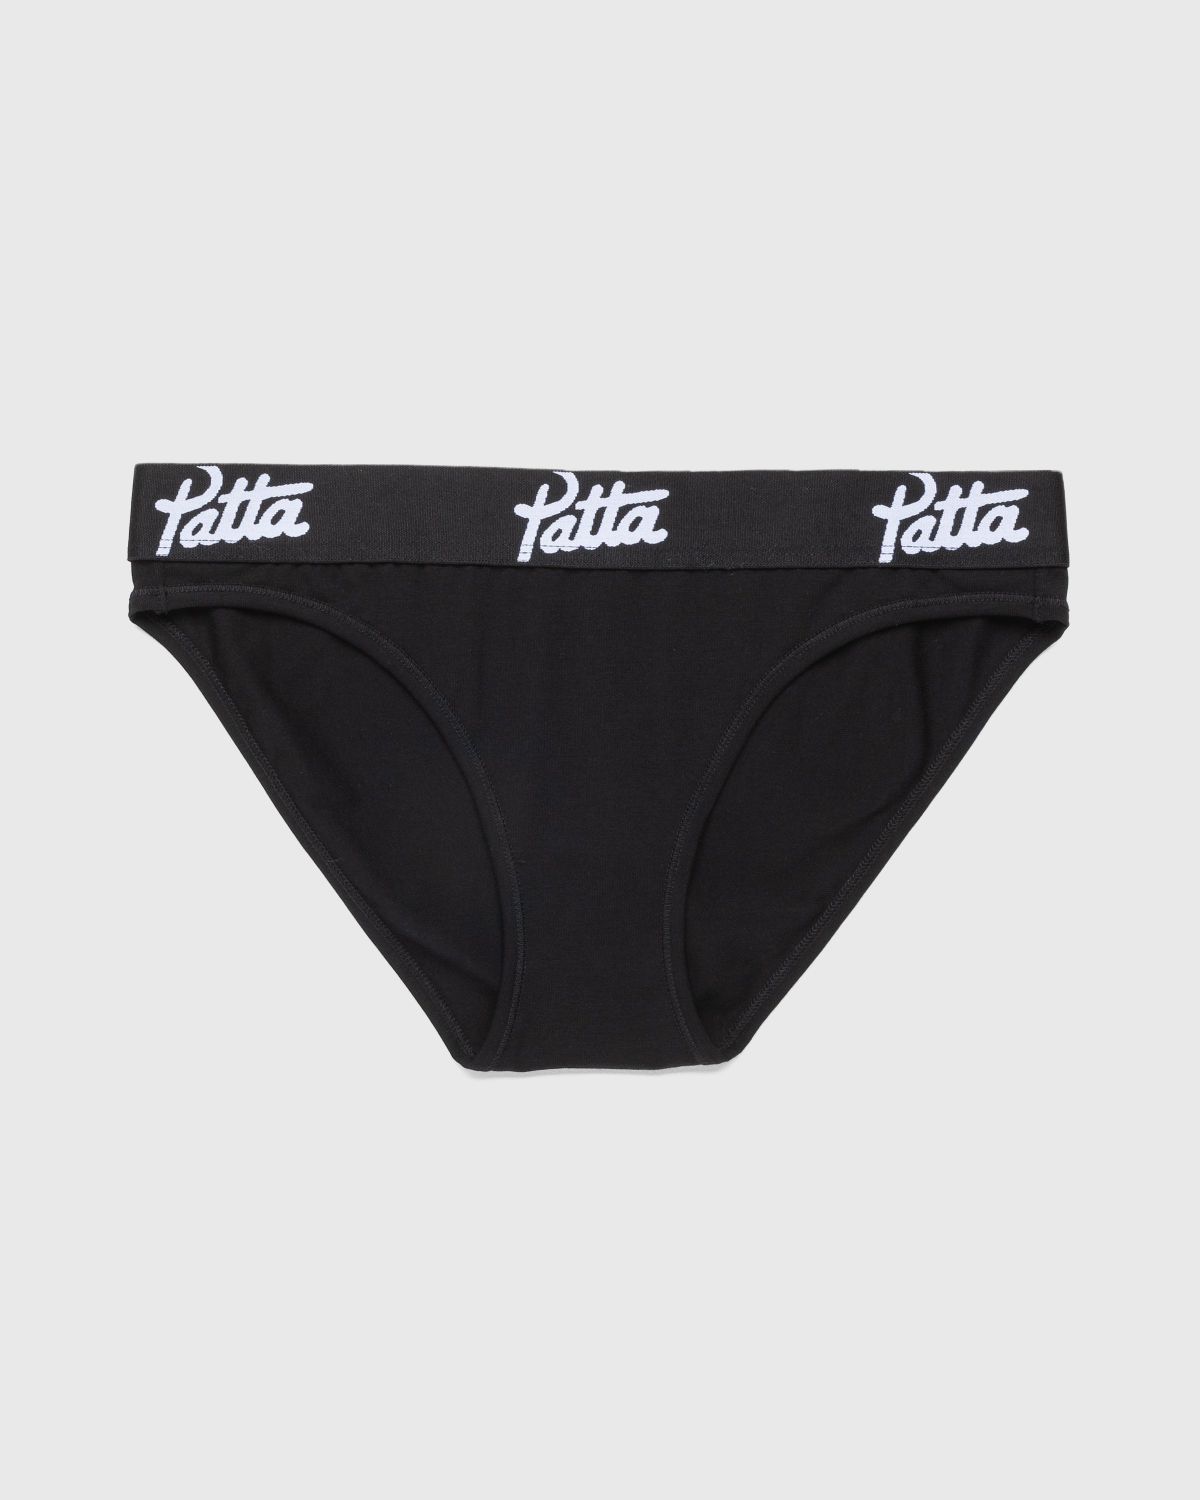 Patta – Women’s Underwear Brief Black - Underwear - Black - Image 1